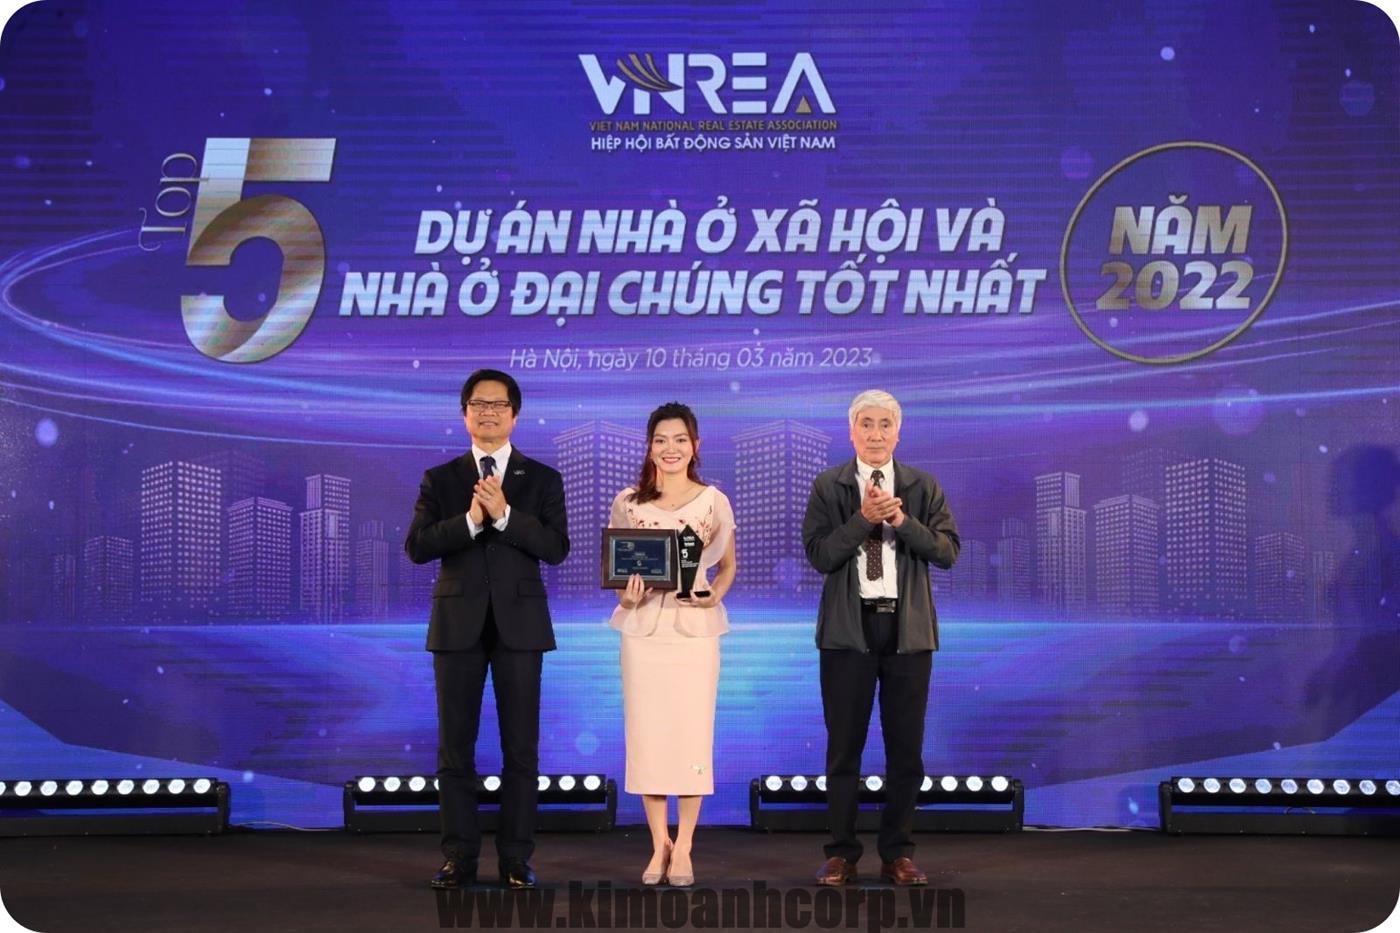 Bà Nguyễn Ngọc Ánh – Phó Chủ tịch HĐQT Kim Oanh Group –  nhận giải “Top 5 dự án nhà ở xã hội và đại chúng tốt nhất năm 2022” cho dự án RichHome 3